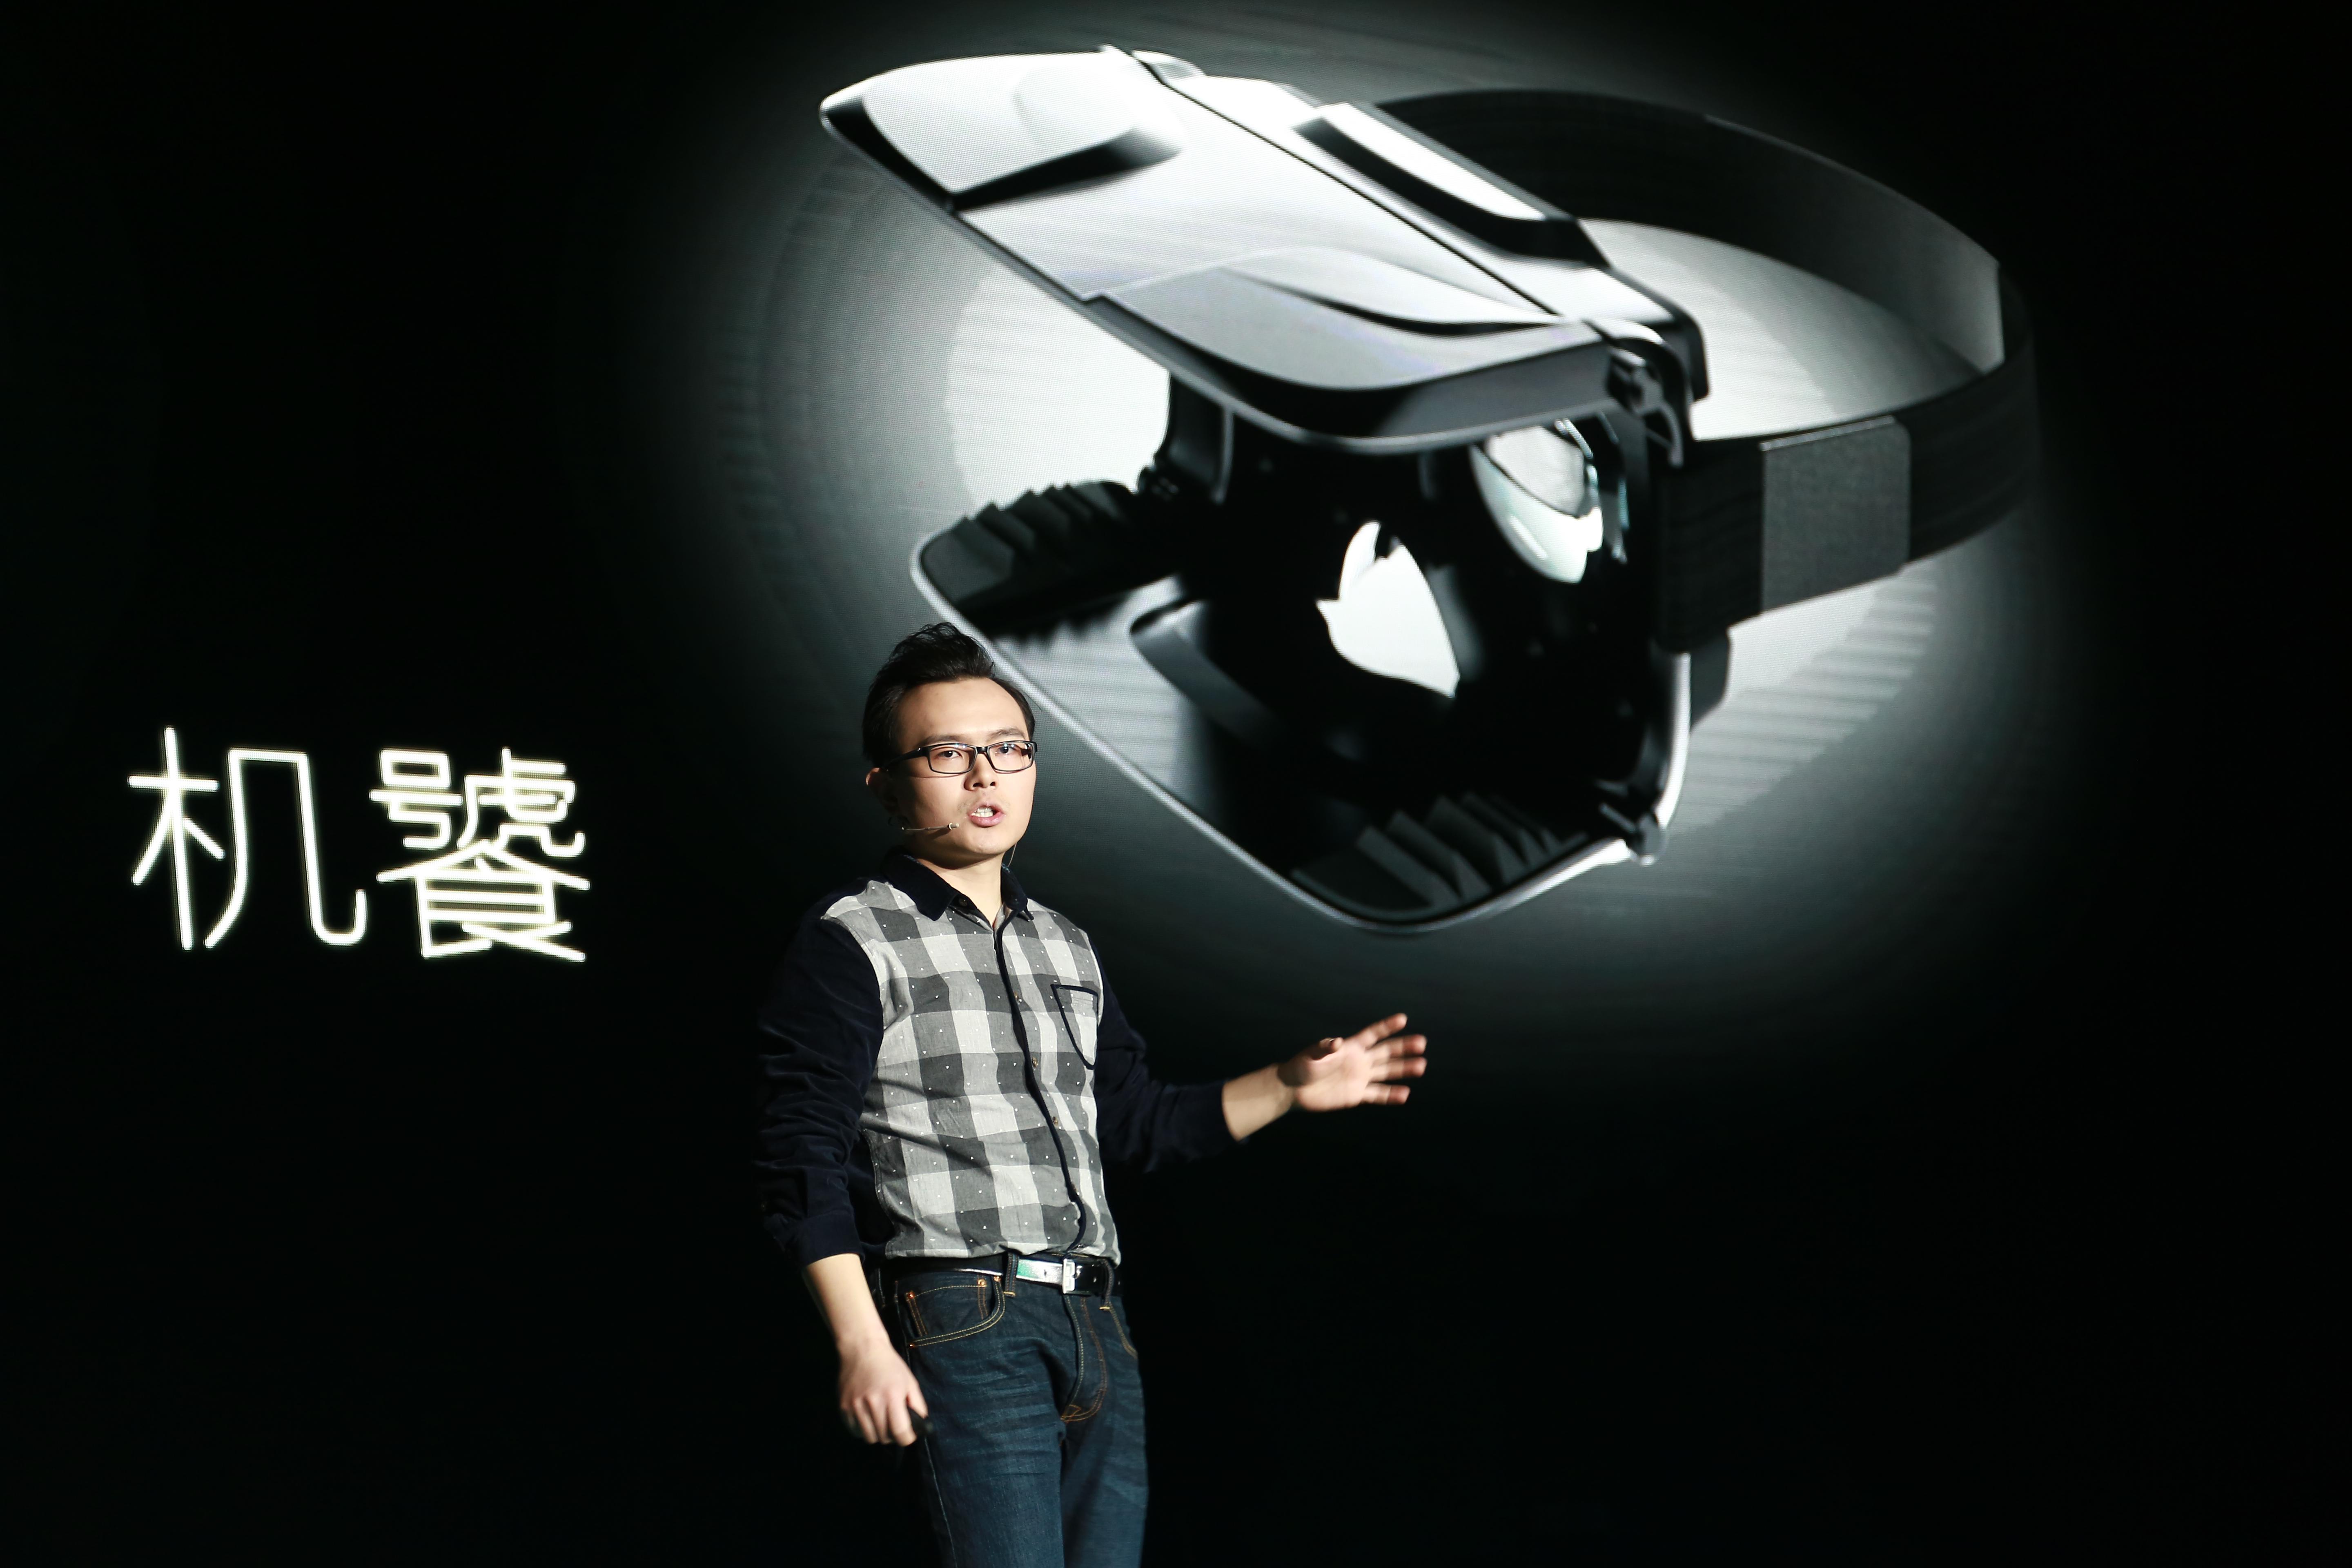 蚁视七种武器发力虚拟现实，称不屑做中国oculus-婺城网